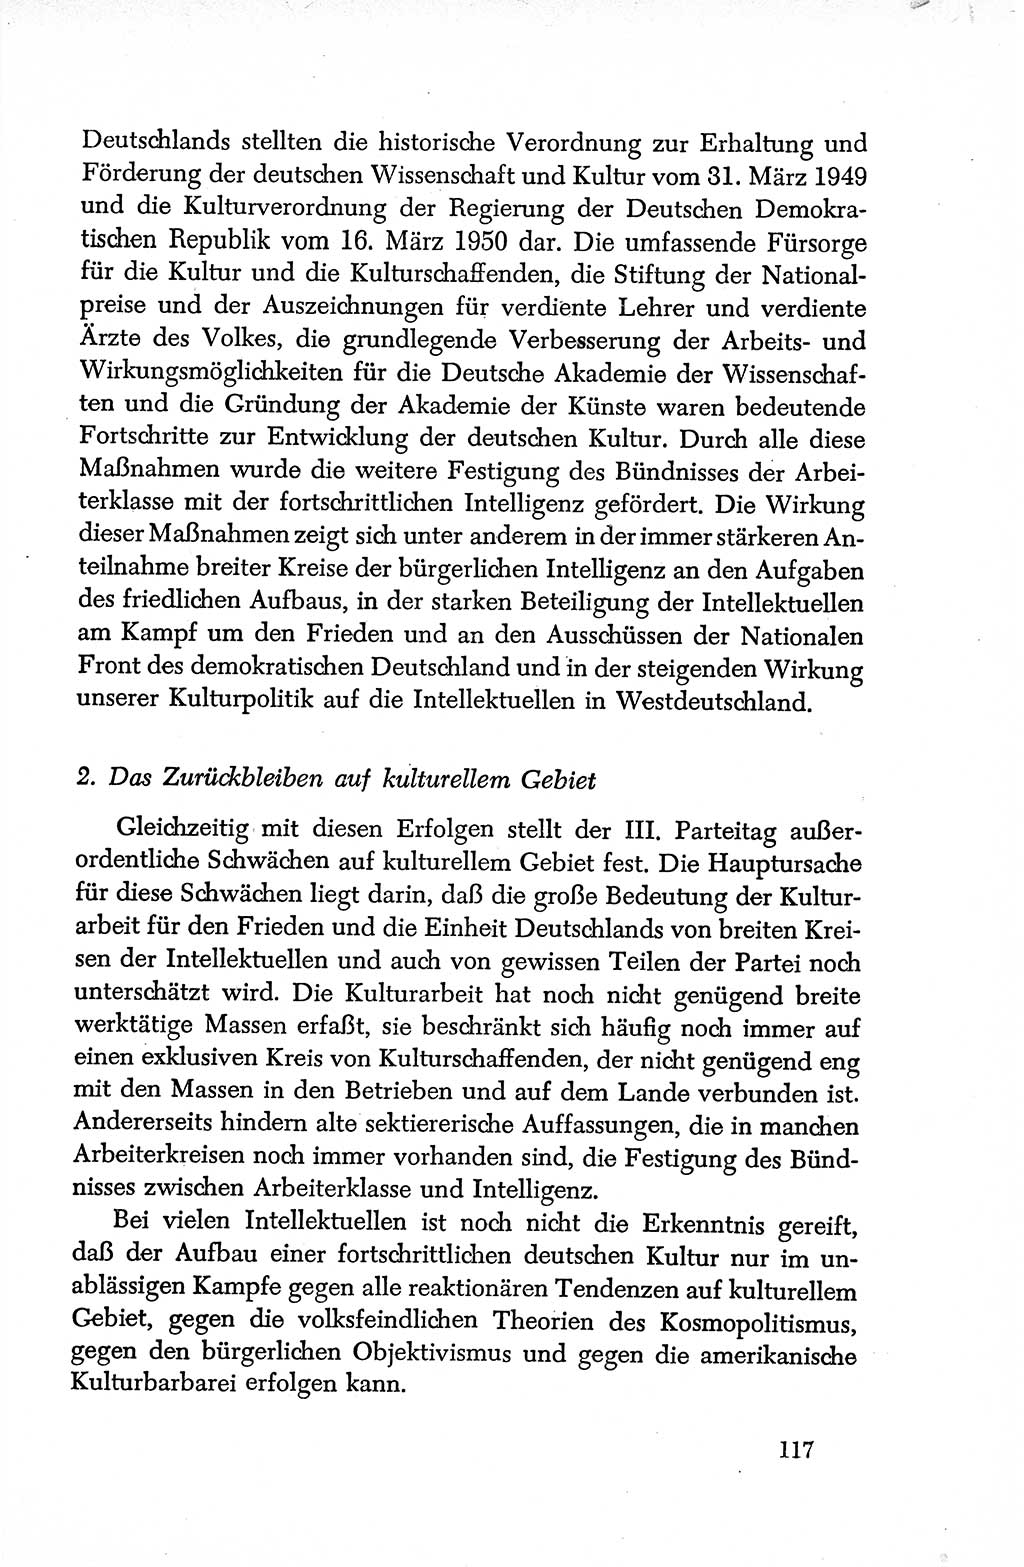 Dokumente der Sozialistischen Einheitspartei Deutschlands (SED) [Deutsche Demokratische Republik (DDR)] 1950-1952, Seite 117 (Dok. SED DDR 1950-1952, S. 117)